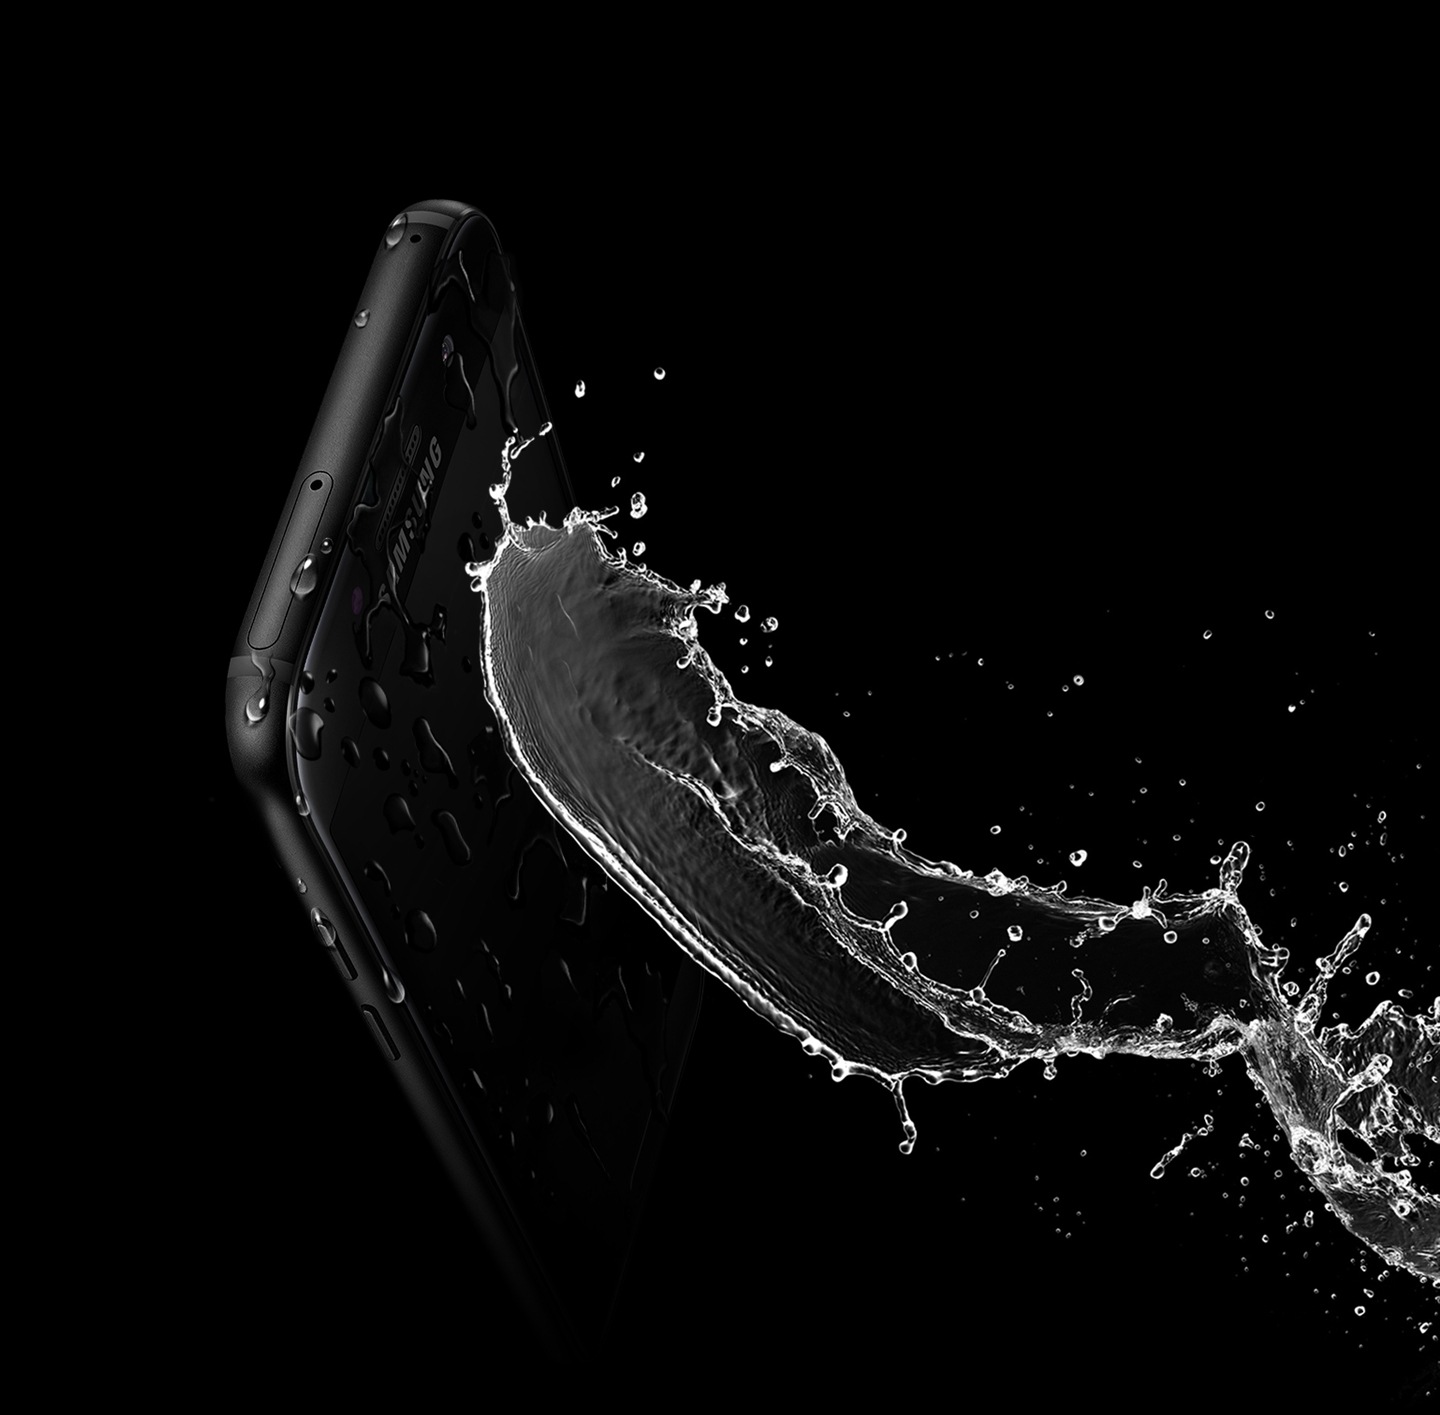 Изображение, которое демонстрирует высокую водонепроницаемость Galaxy A3 (2017) благодаря классу защиты IP68.